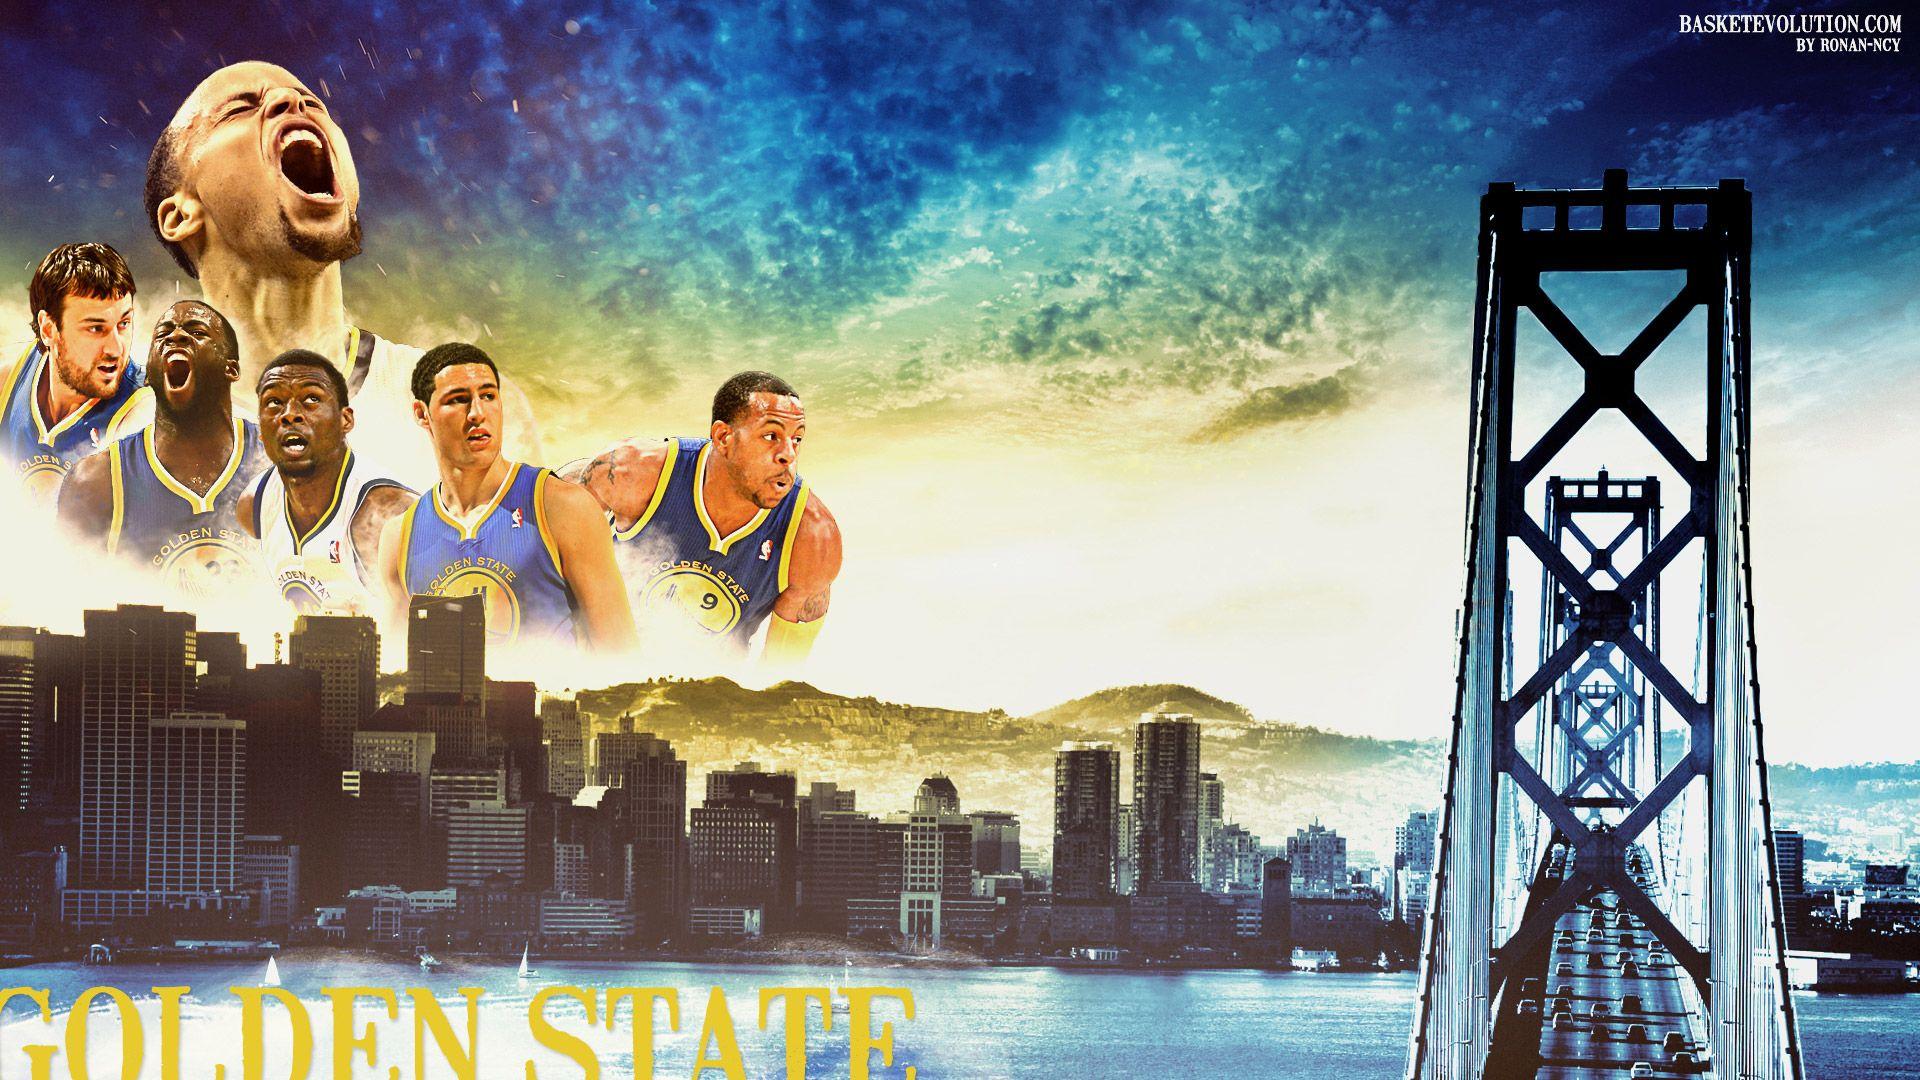 Golden State Warriors Wallpaper HD 1366x768 (231.04 KB)